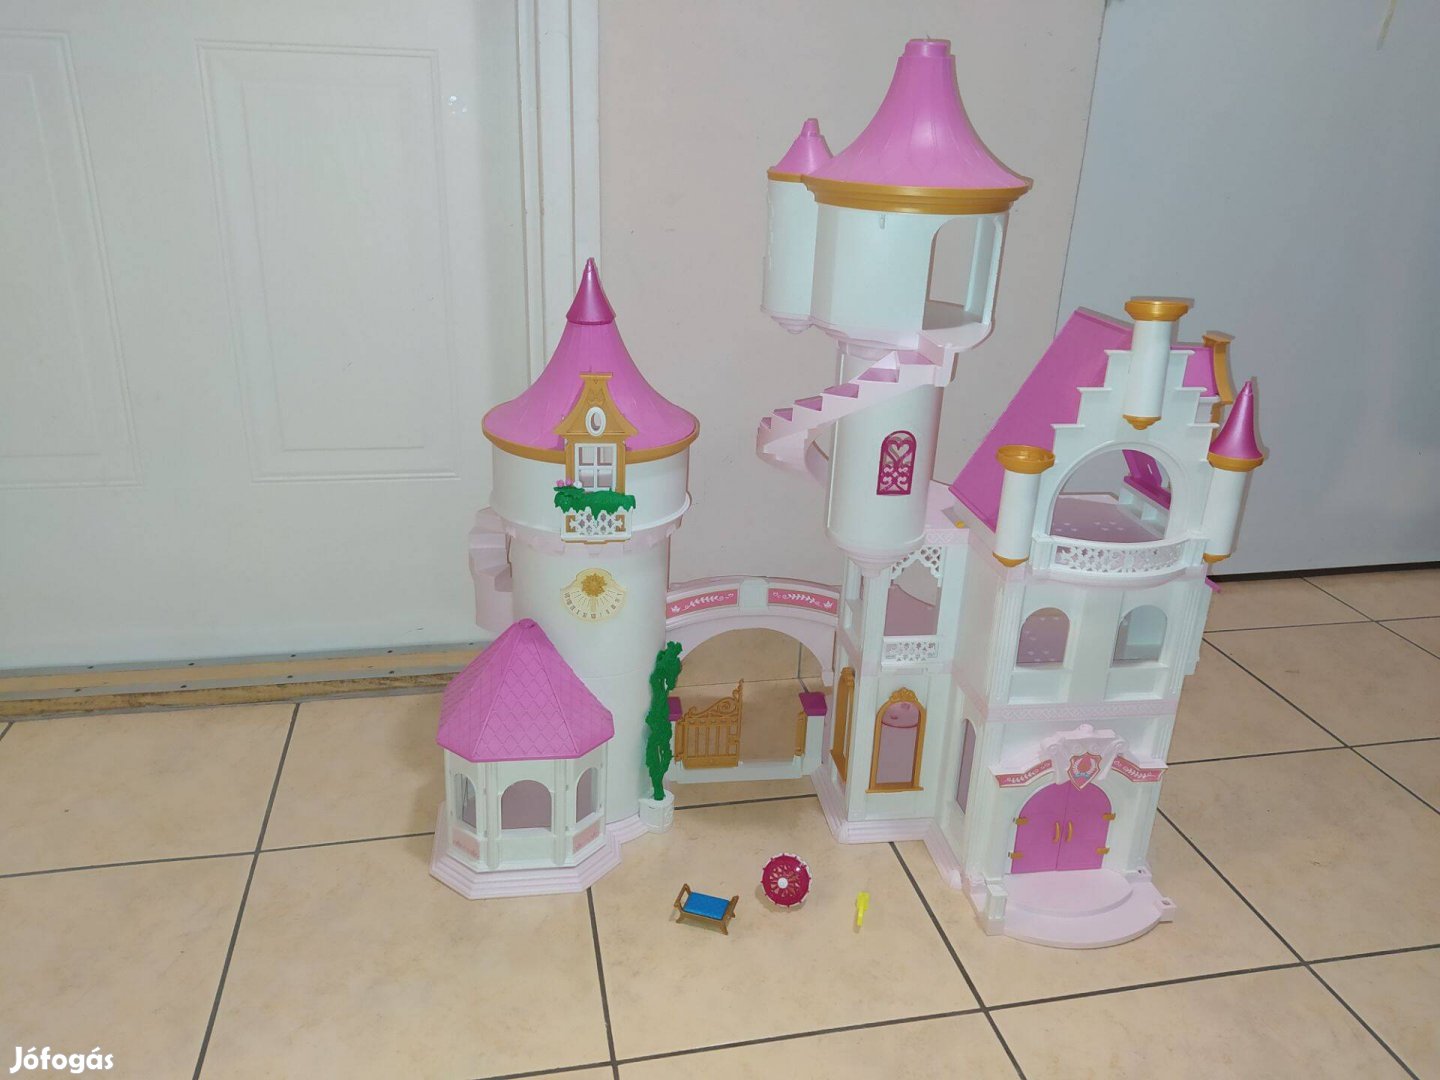 Playmobil hercegnő kastély hiányos állapotban